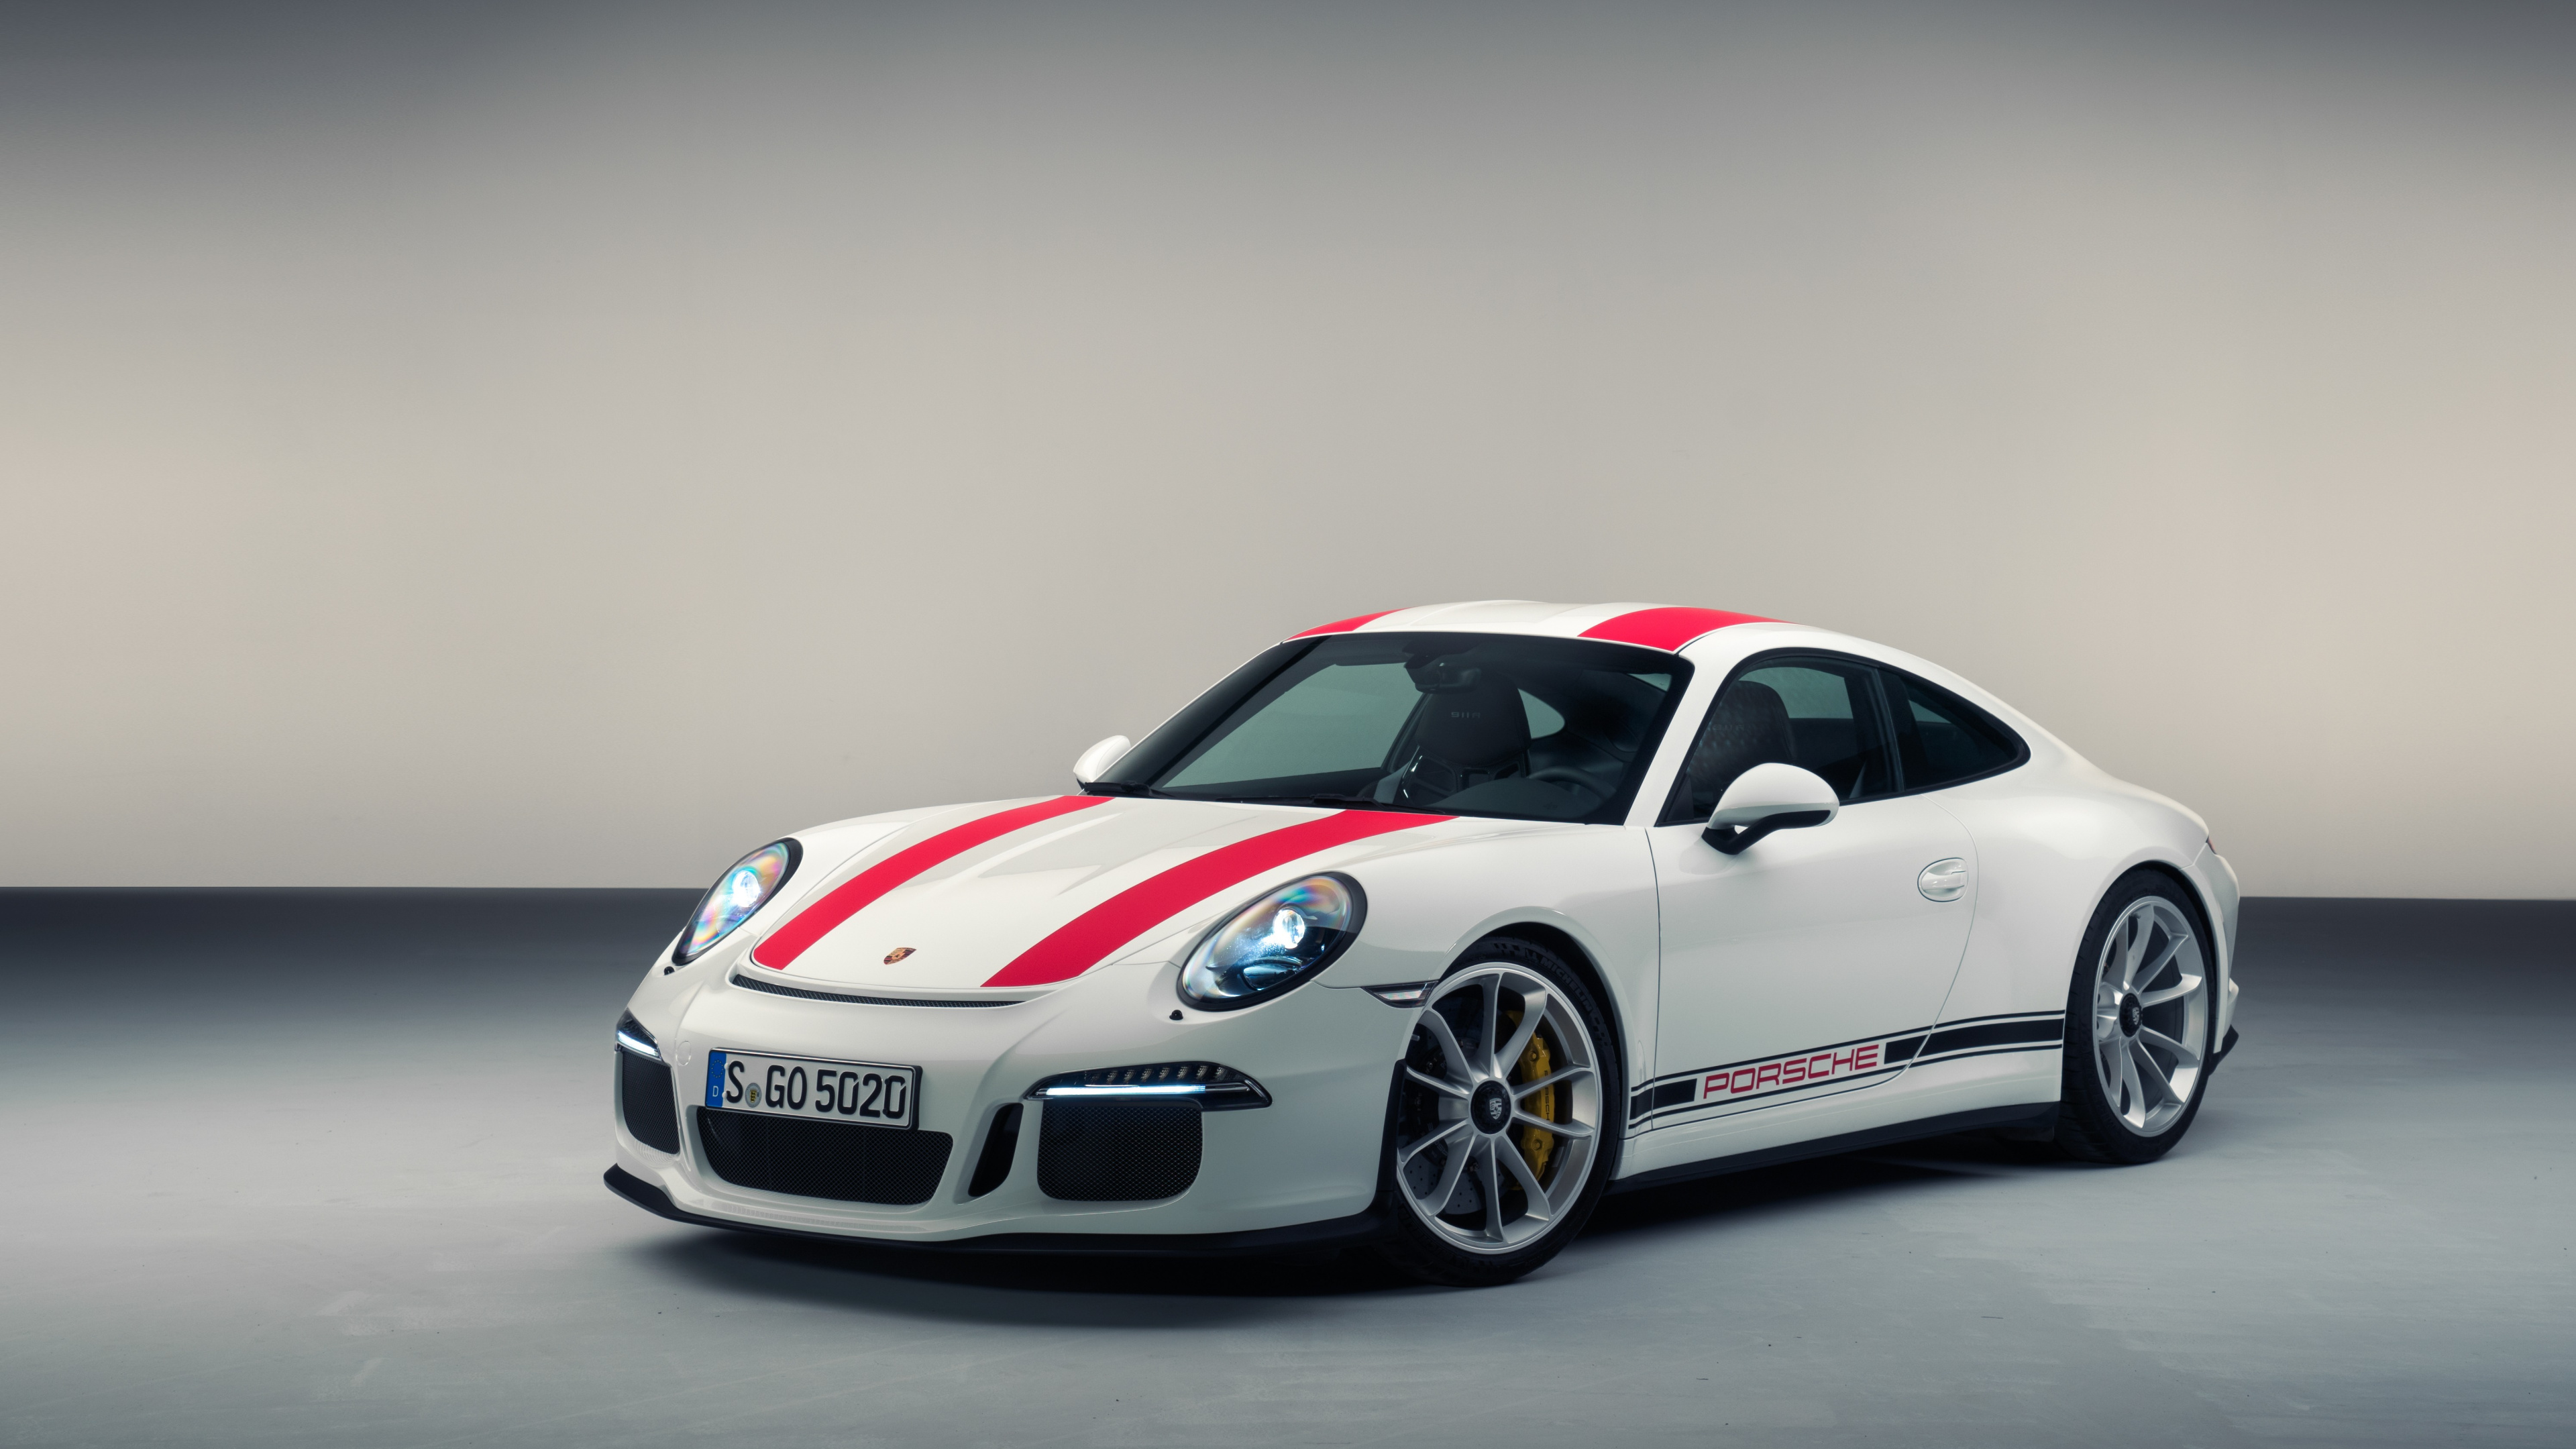 Weißer Und Roter Porsche 911. Wallpaper in 3840x2160 Resolution